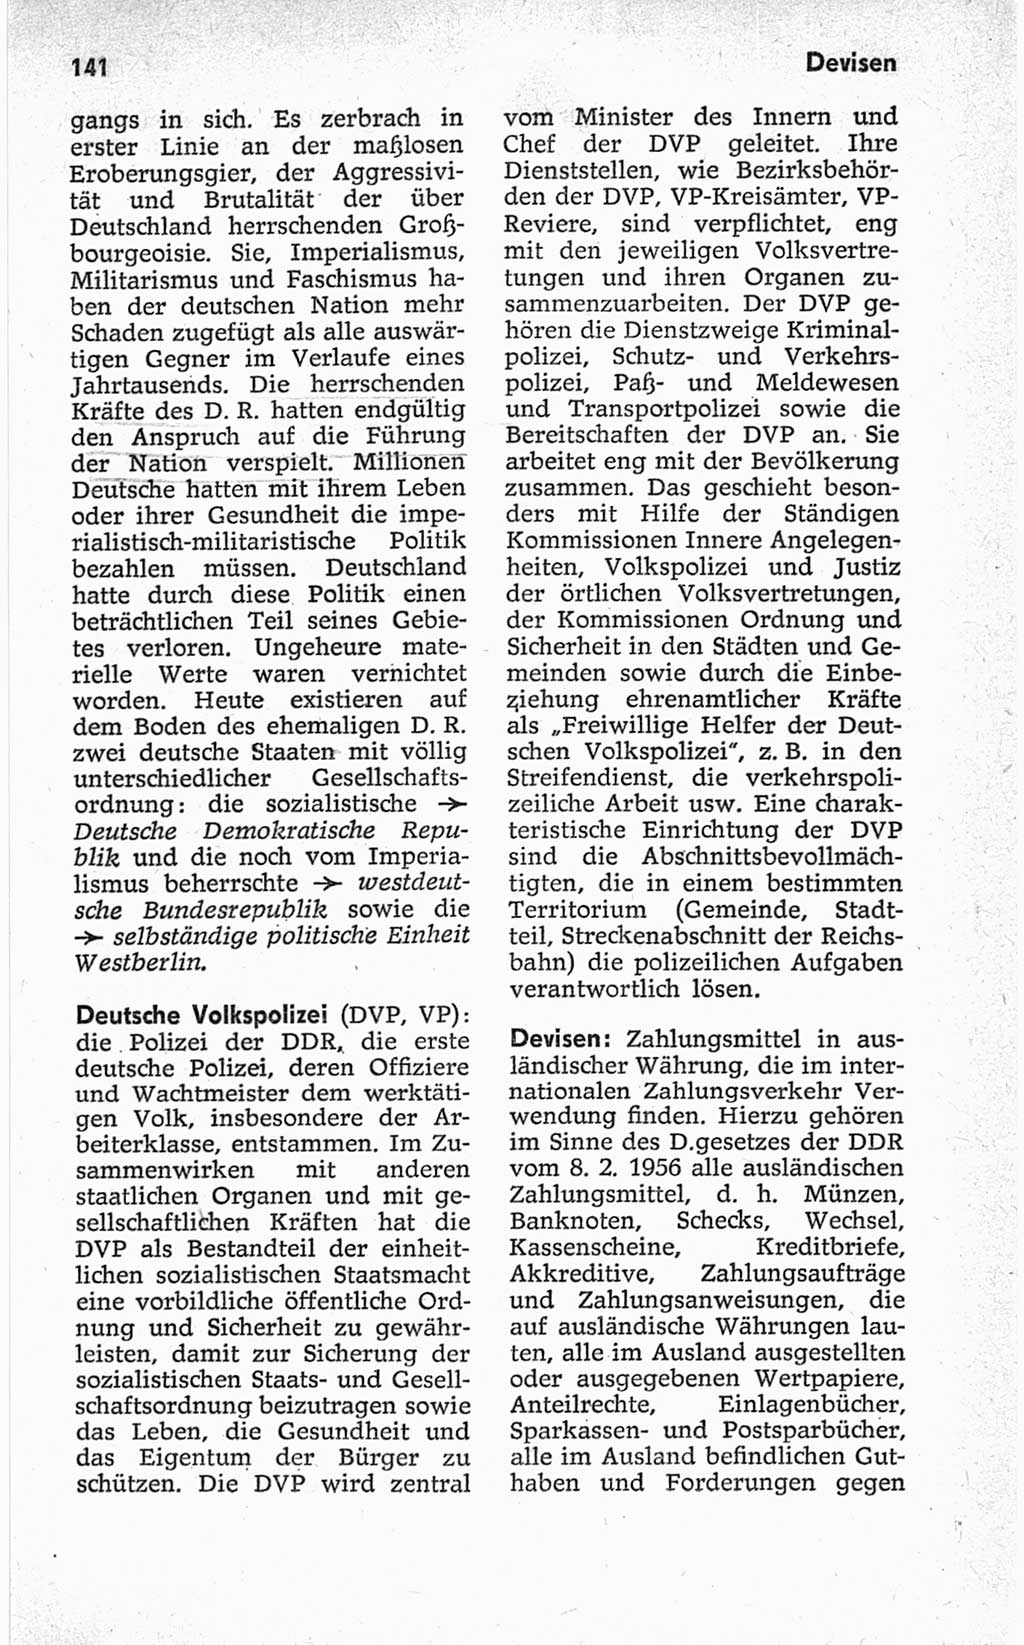 Kleines politisches Wörterbuch [Deutsche Demokratische Republik (DDR)] 1967, Seite 141 (Kl. pol. Wb. DDR 1967, S. 141)